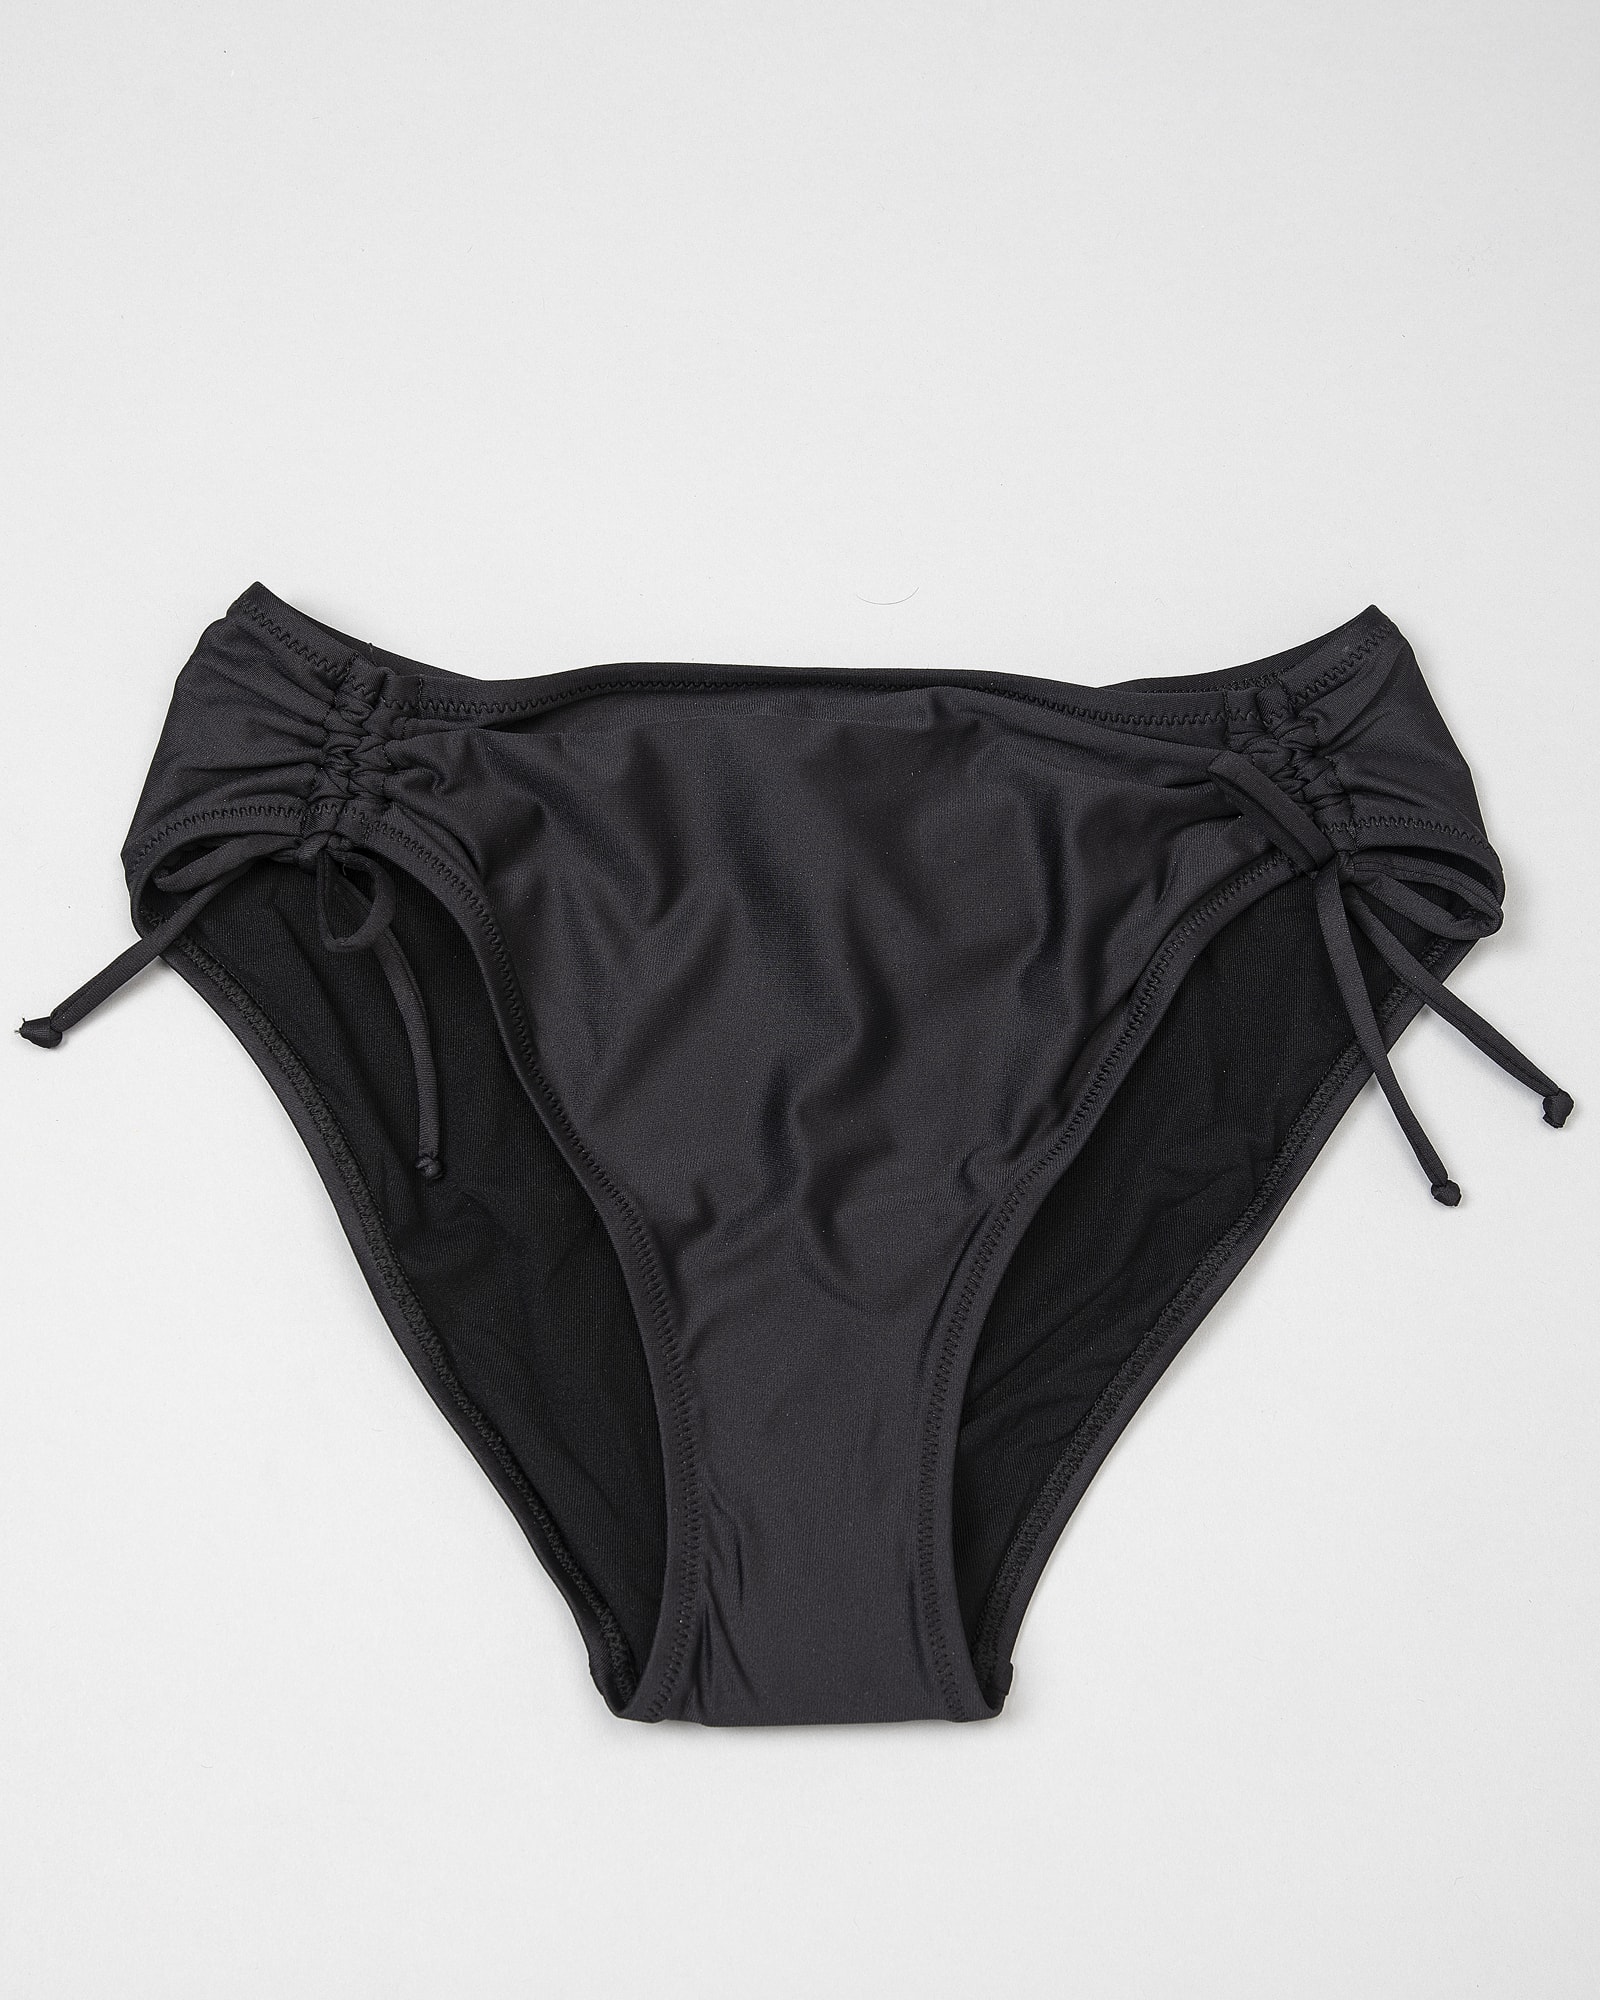 Antigel L'estivale Chic Bikini Bottom fba0616-0005 Black